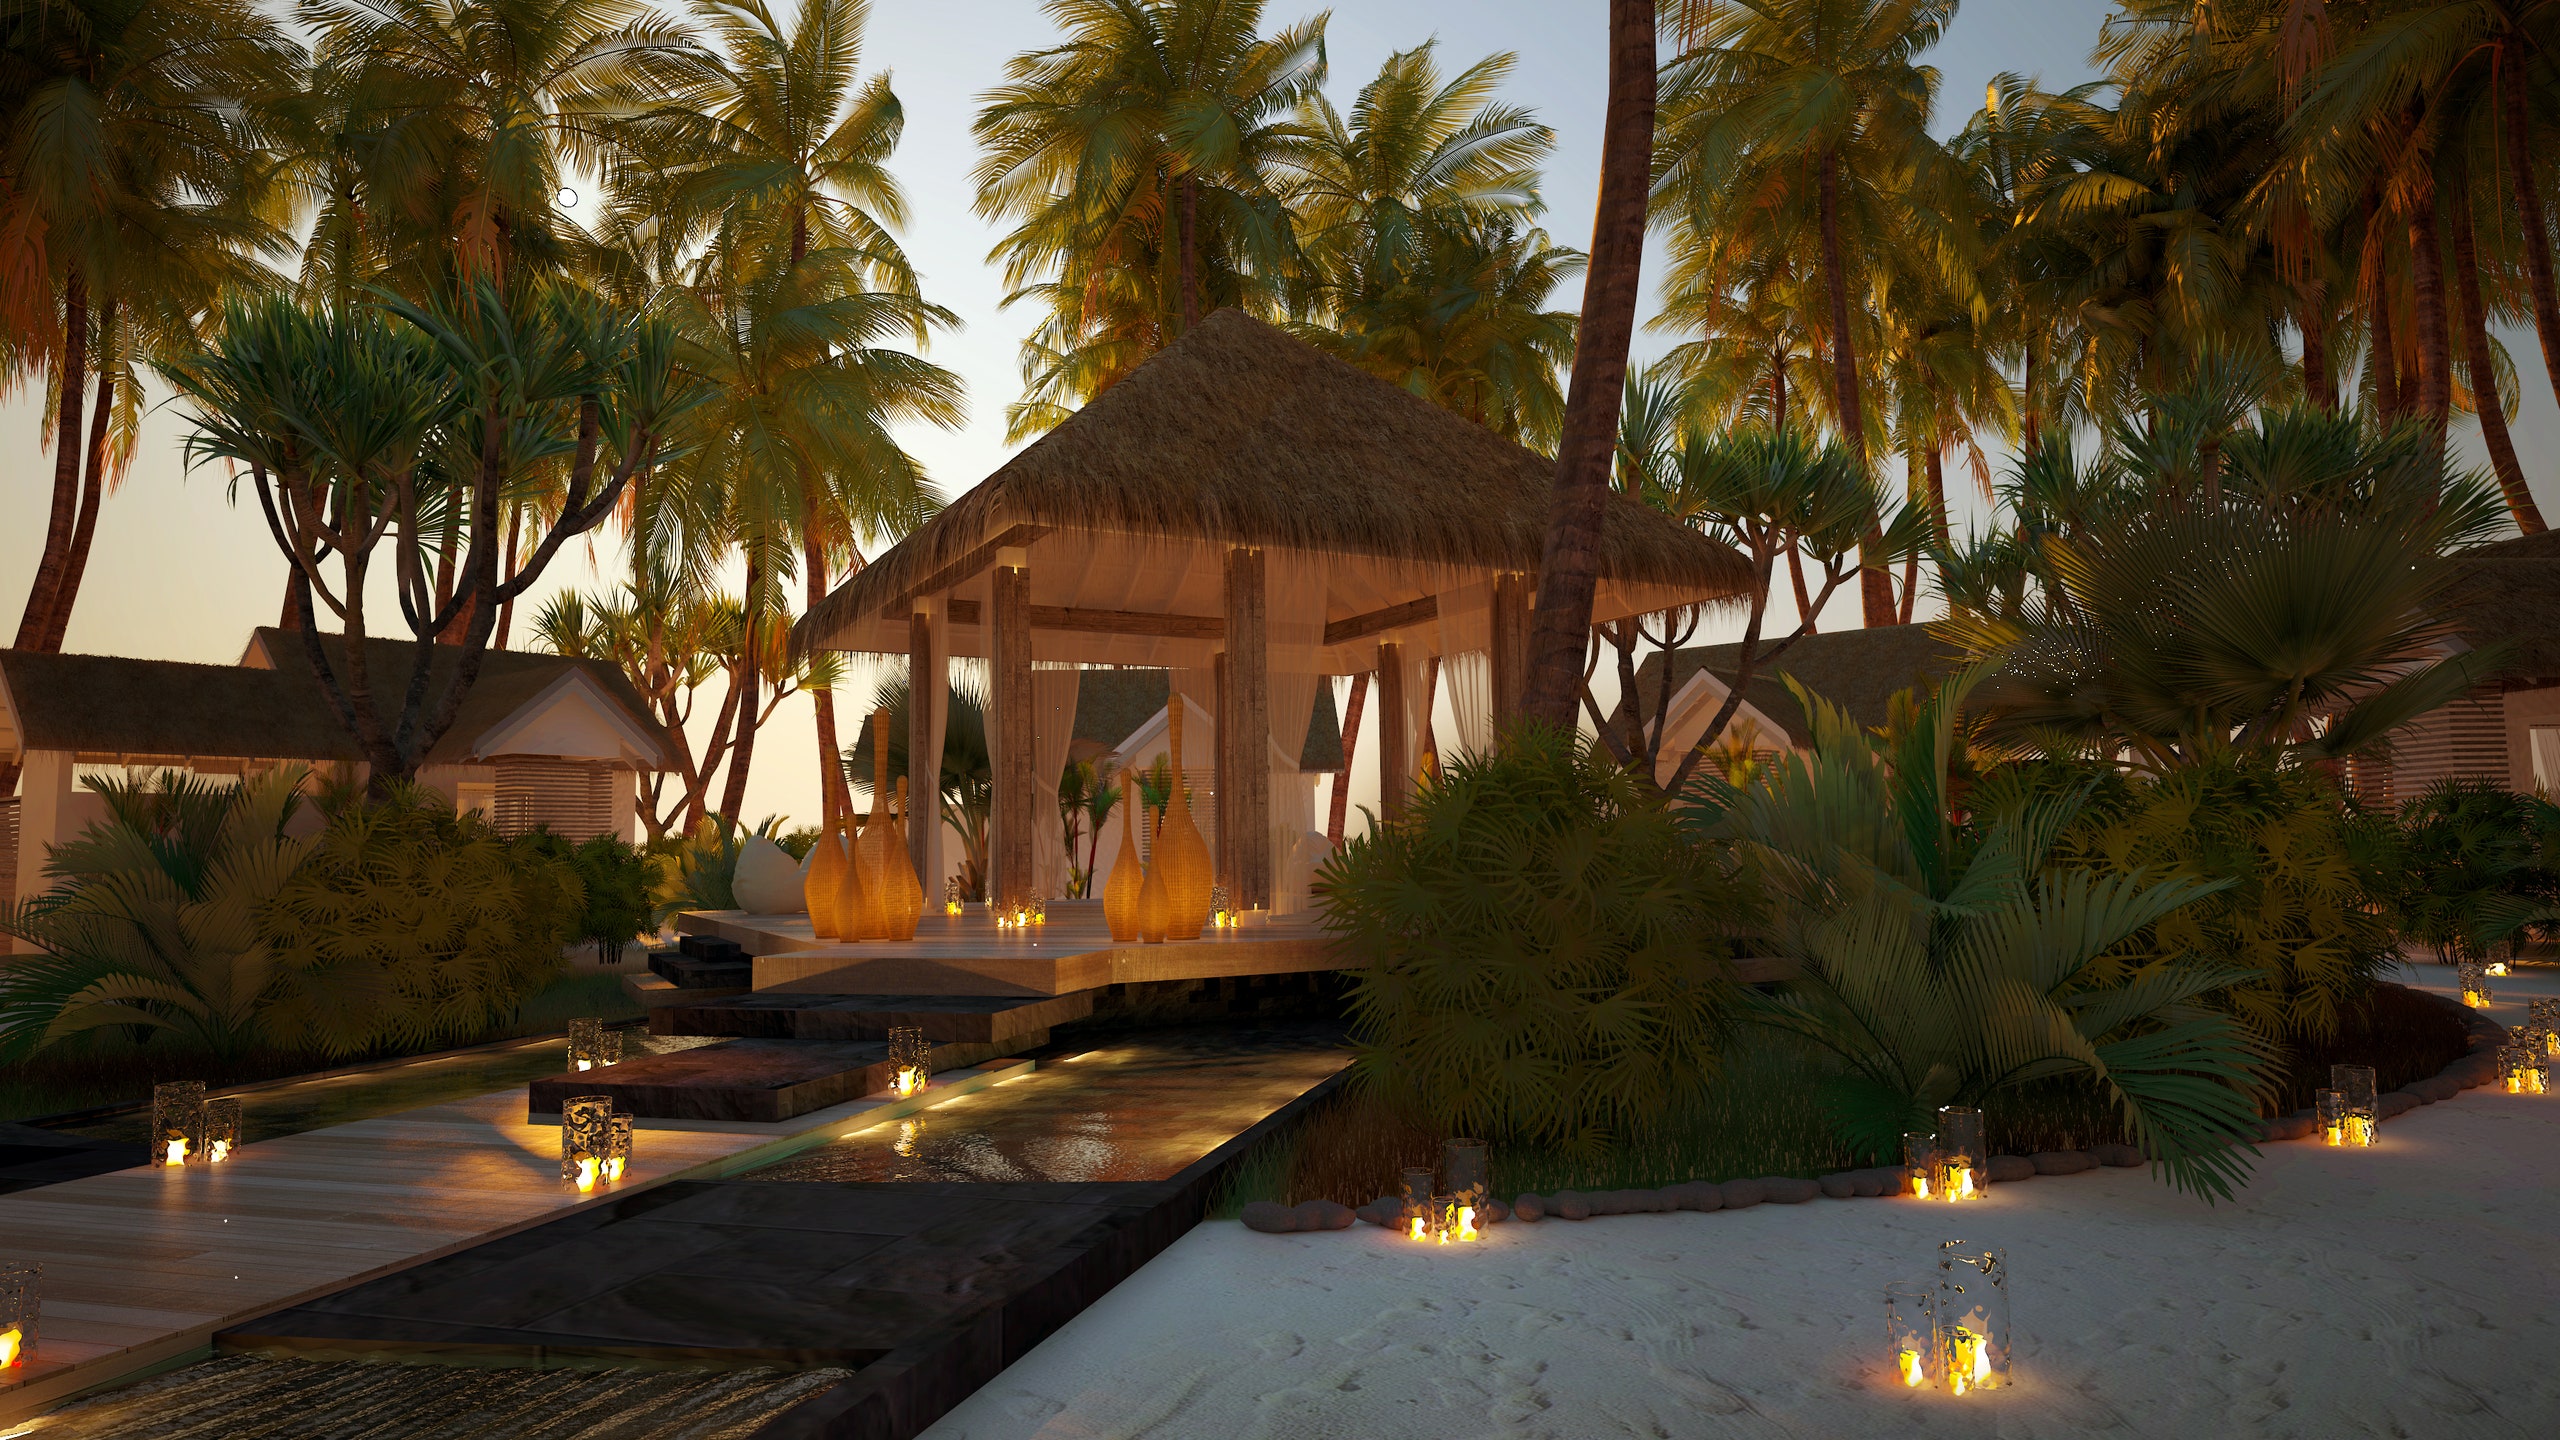 Курорт Baglioni Resort Maldives открывается летом 2017 бронировать виллы можно в феврале | Allure